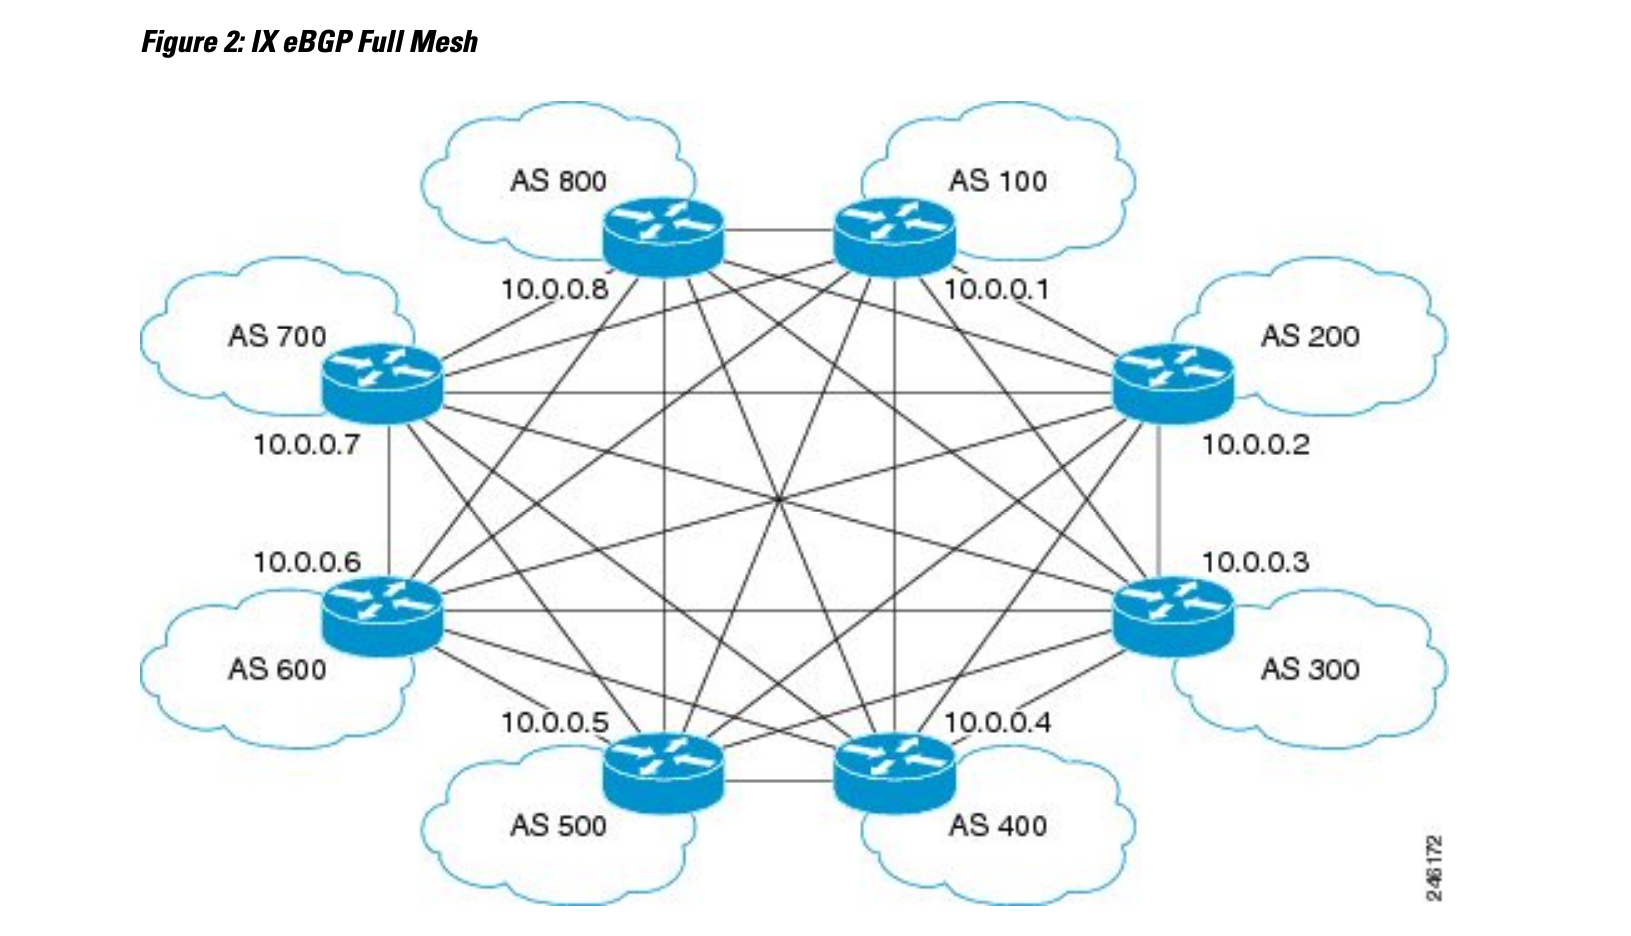 ix eBGP full mesh